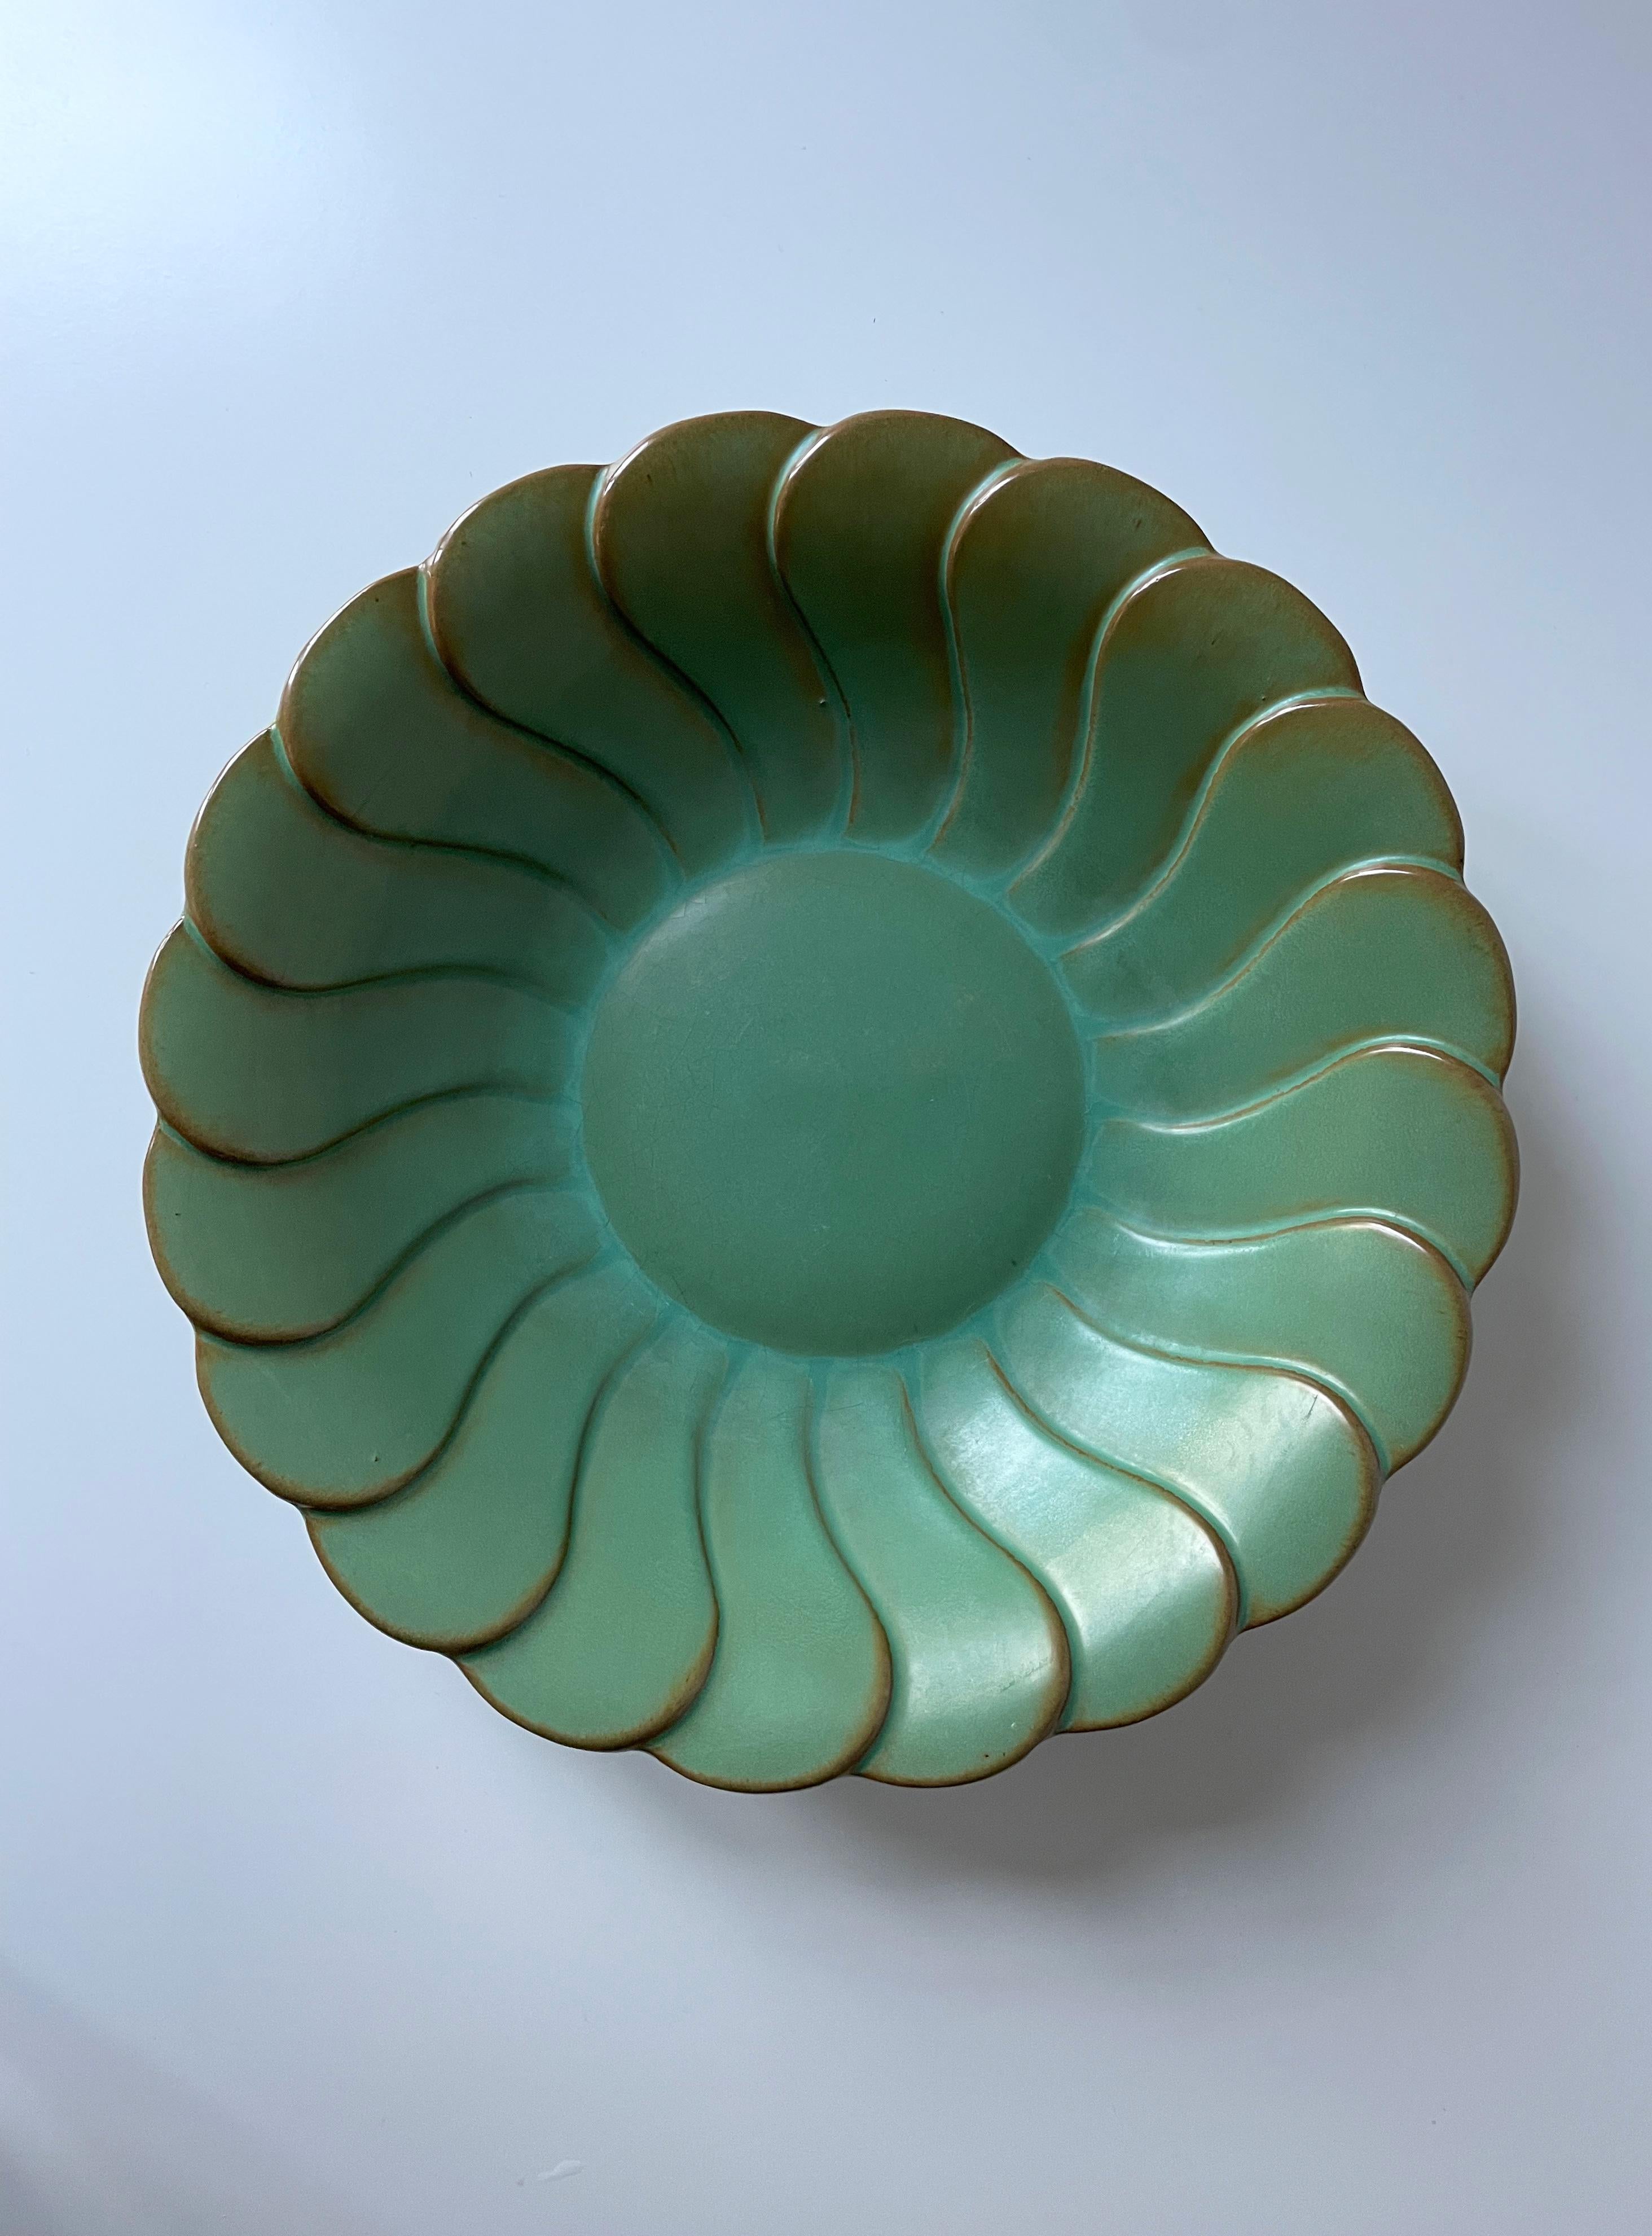 Antique Celadon Green Art Deco Bowl Plate, Arthur Percy, 1930s For Sale 1